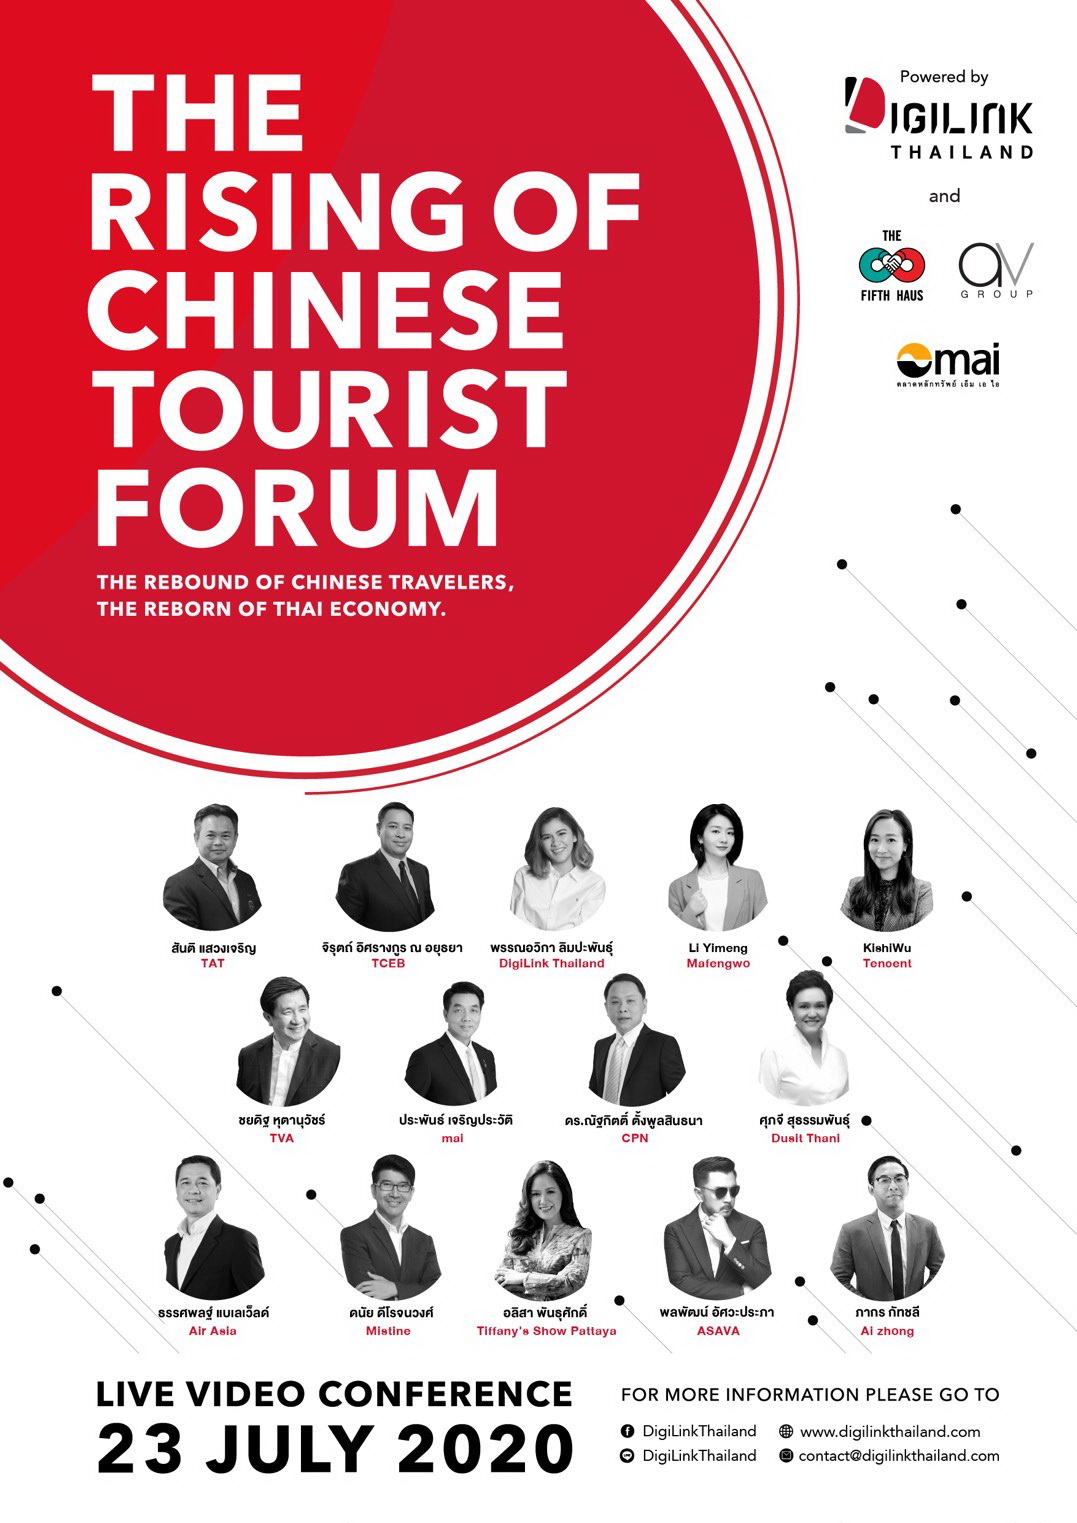 สร้างโอกาส ดึงนักท่องเที่ยวจีนกลับมา ในงานเสวนาThe Rising of Chinese Tourist Forum พบ 14 กูรูดัง ร่วมวิเคราะห์ตลาดนักท่องเที่ยวจีน 23 ก.ค. นี้